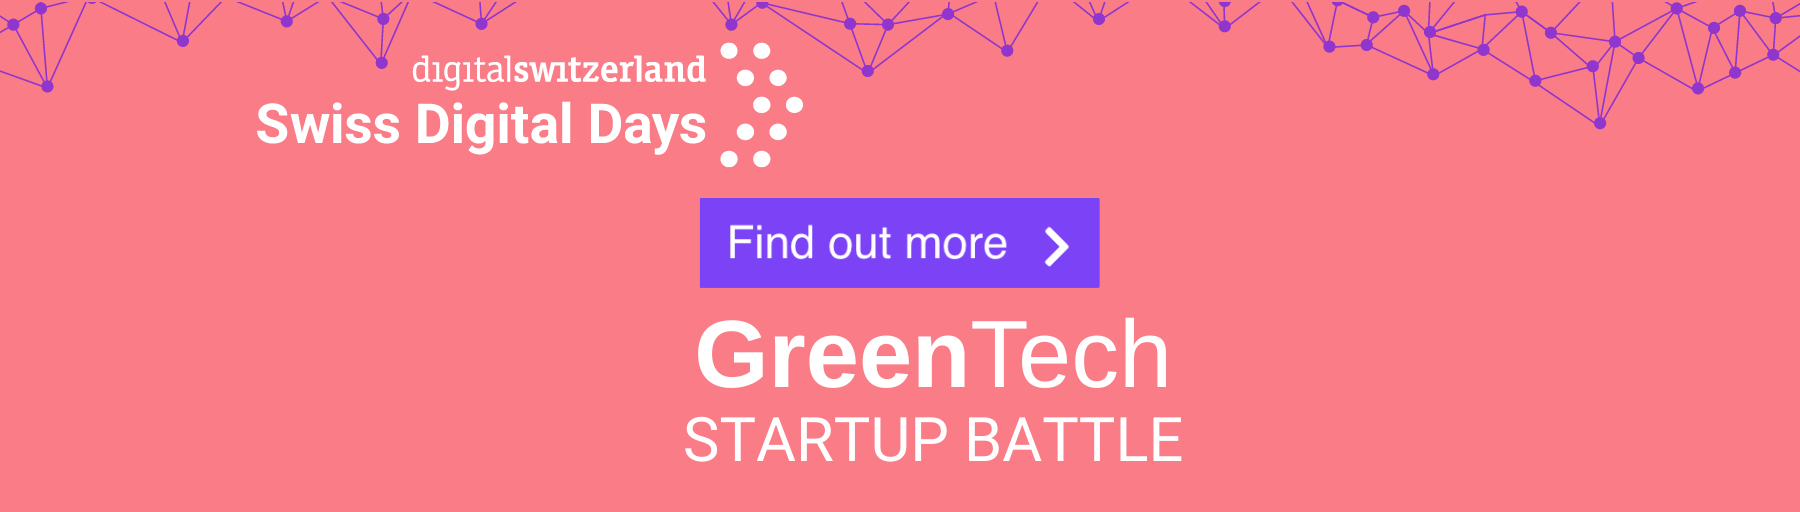 GreenTech Startup Battle